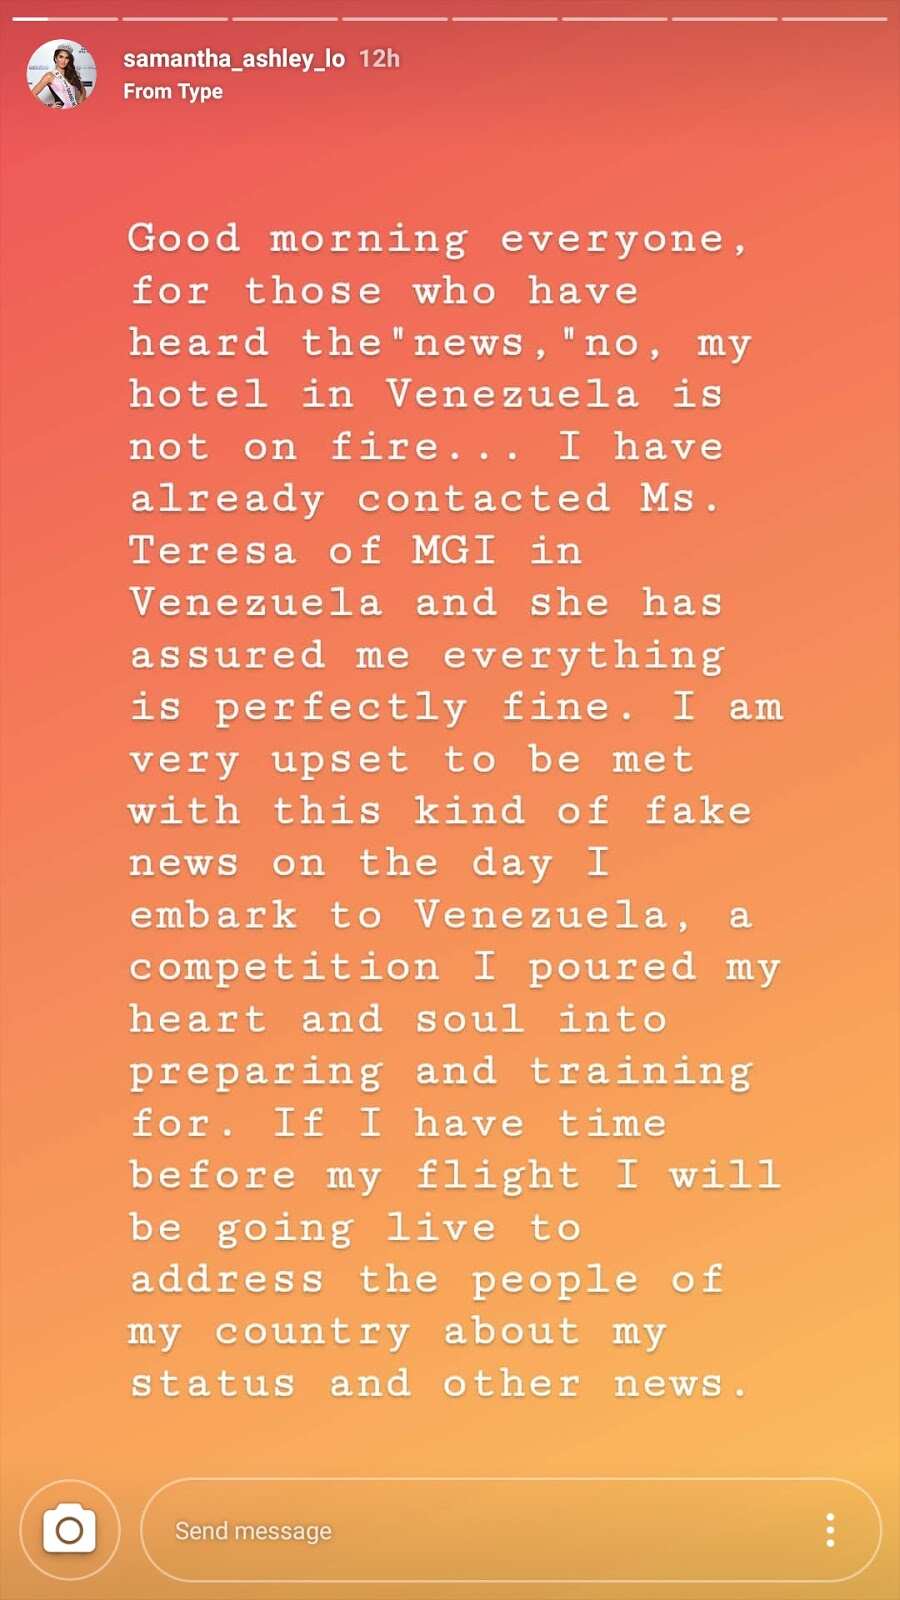 Samantha Ashley Lo responds to bashers spreading fake news about Venezuela Hotel